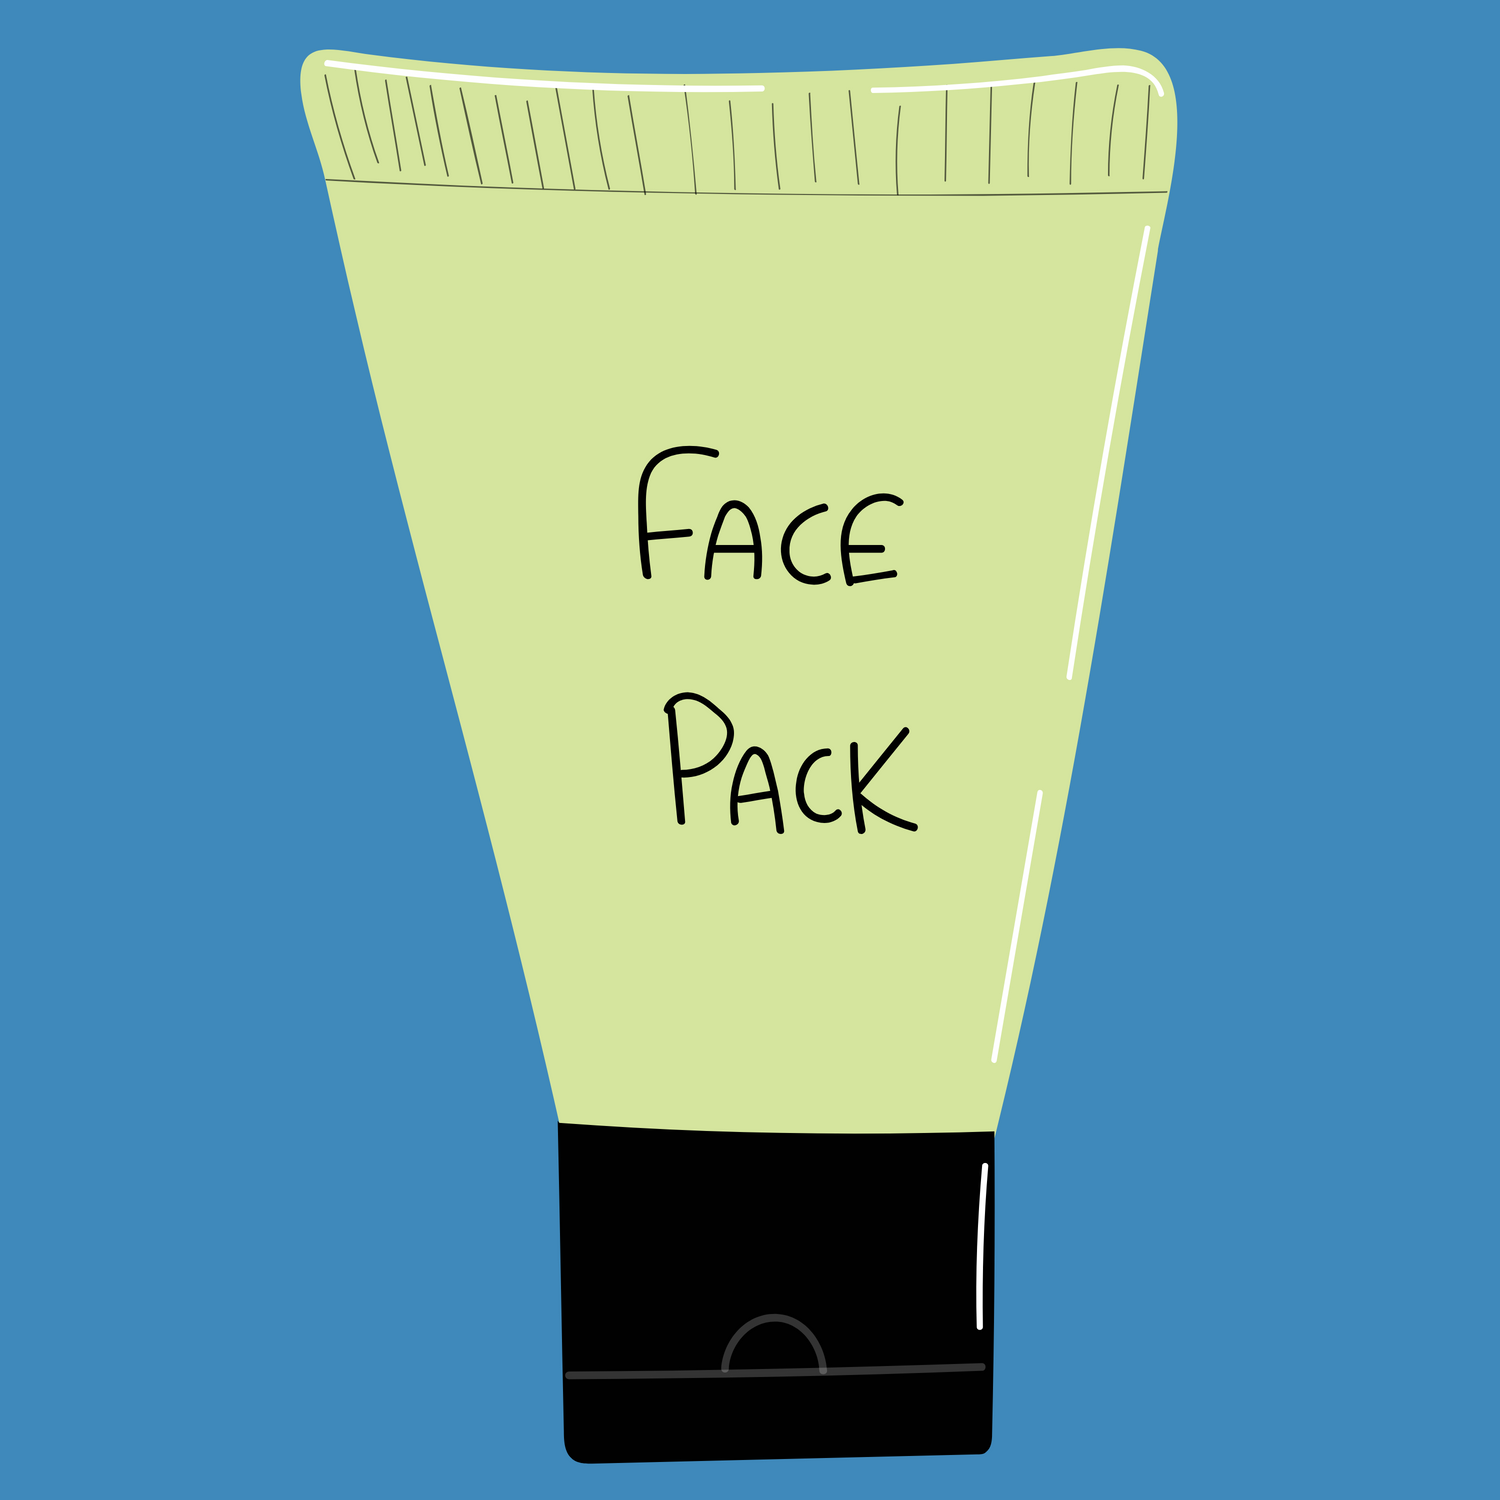 Facepacks